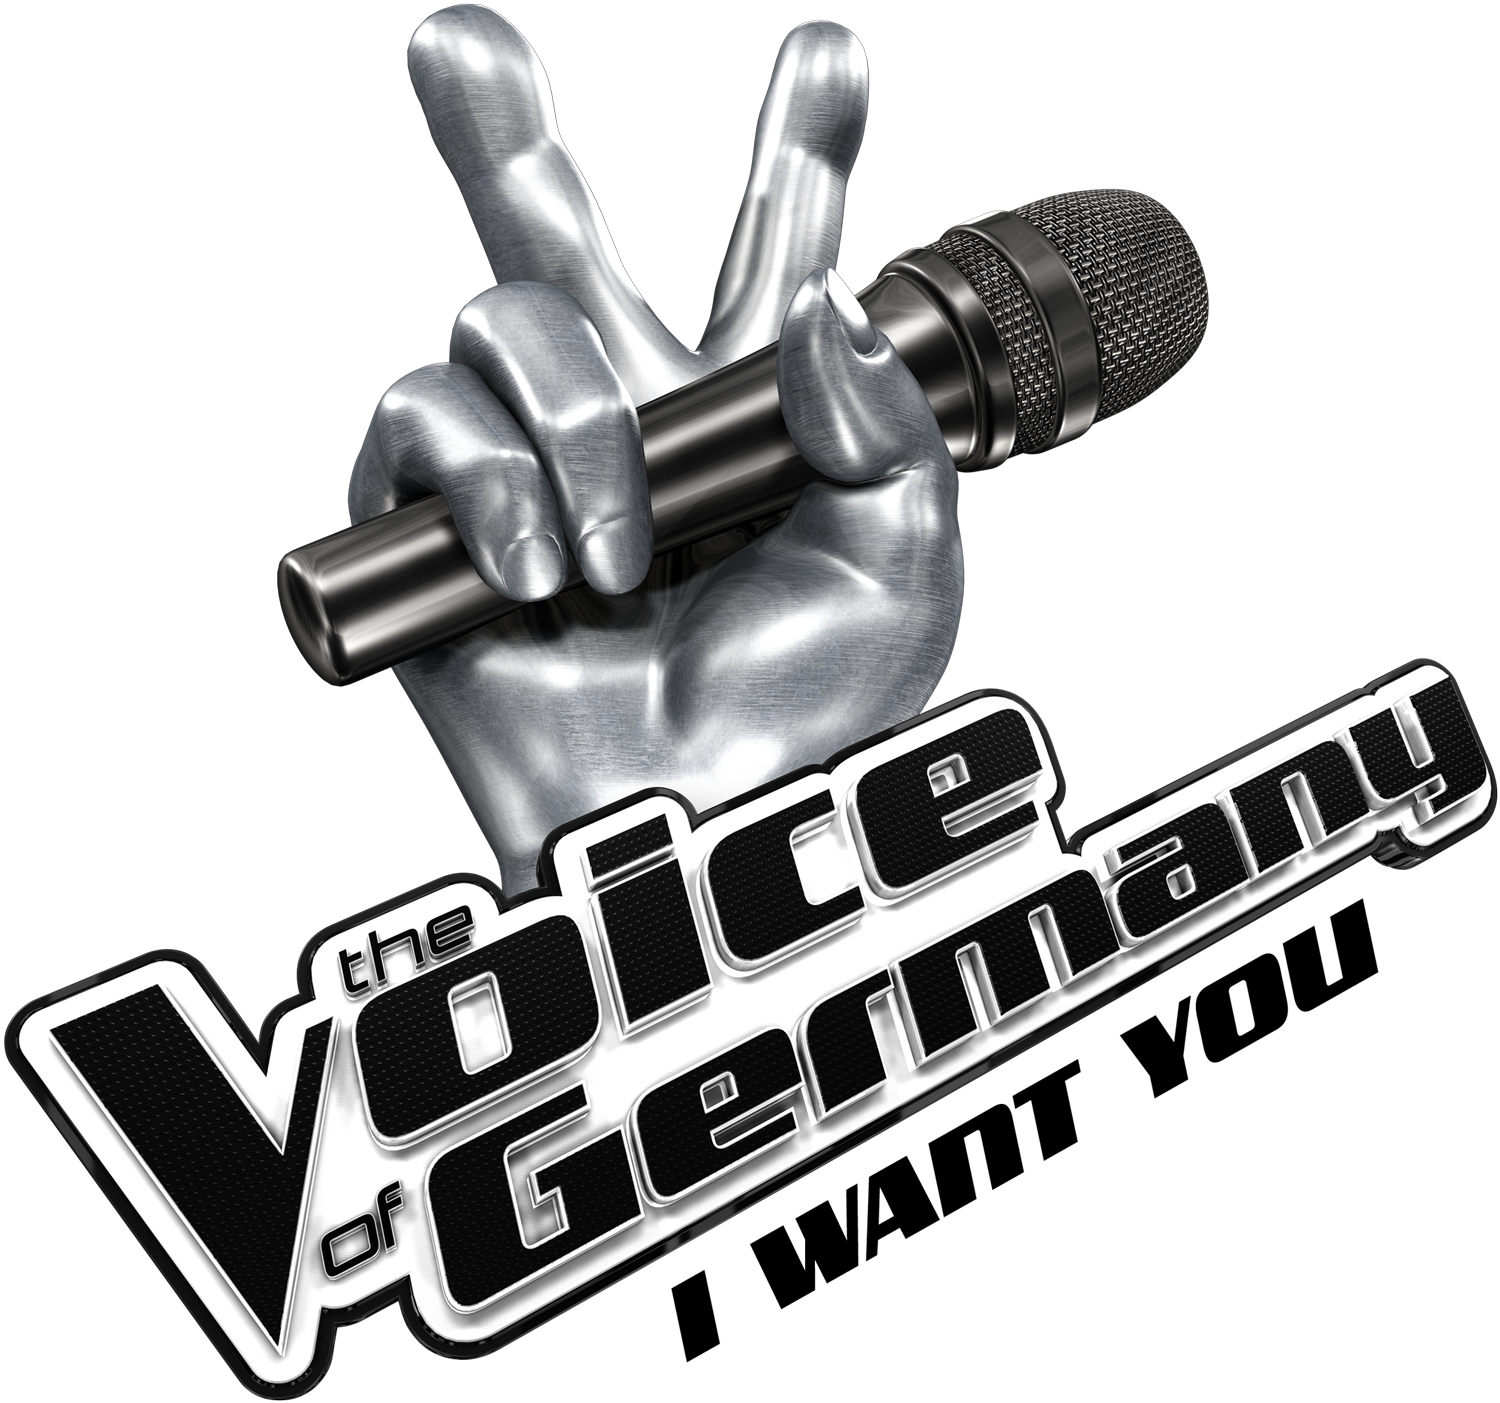 Голос без интернета. The Voice of Germany логотип. Шоу голос лого. Шоу голос логотип вектор.